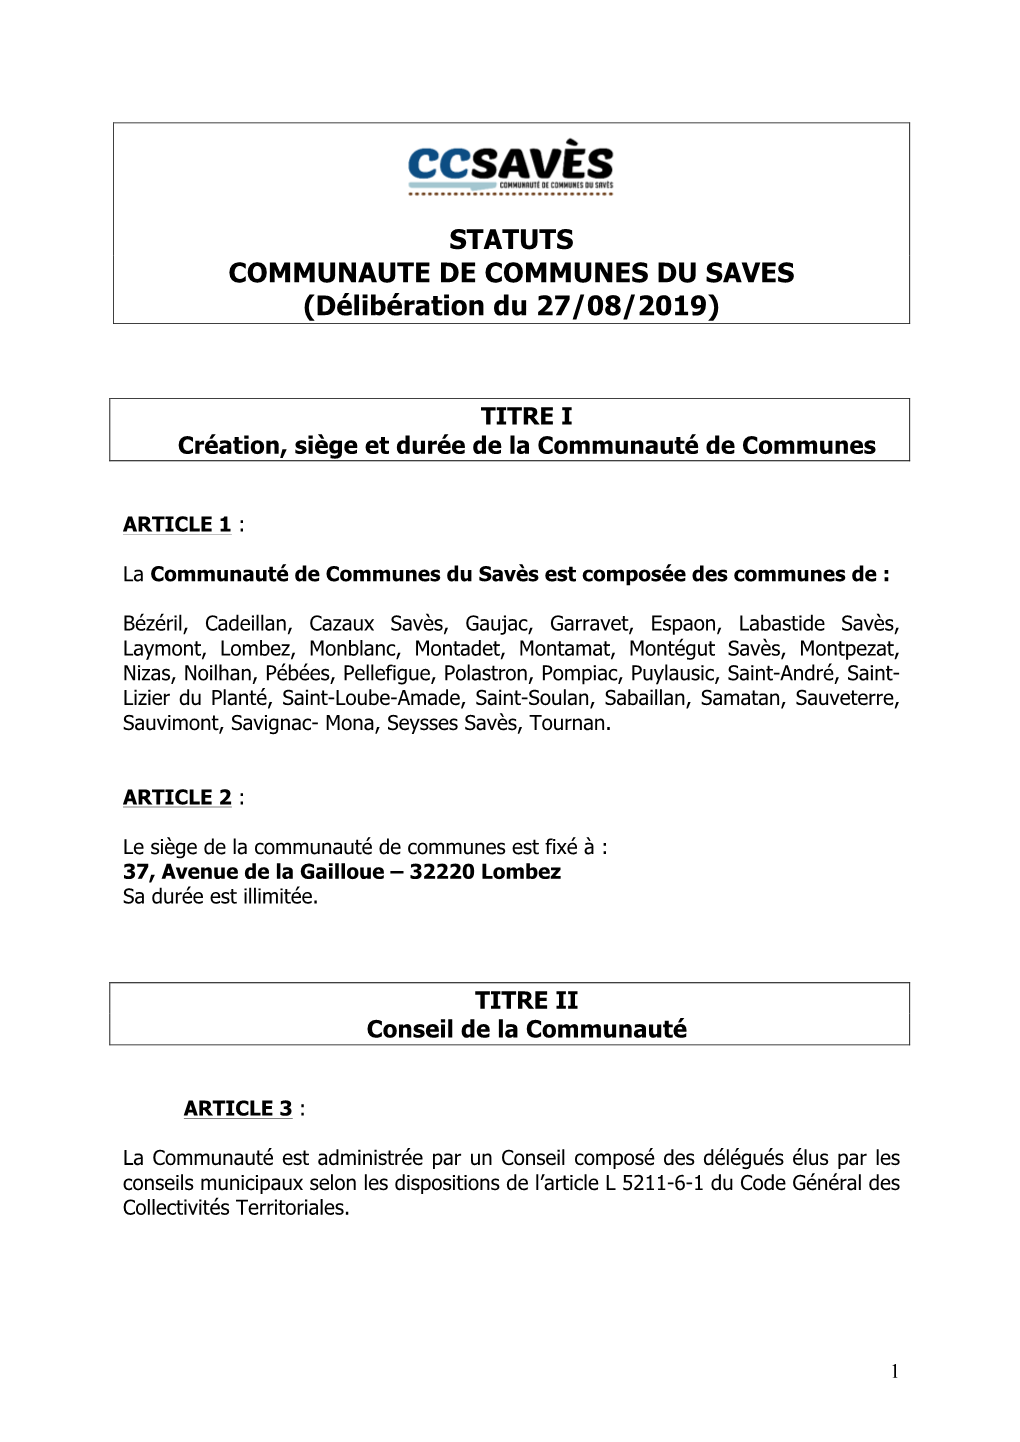 STATUTS COMMUNAUTE DE COMMUNES DU SAVES (Délibération Du 27/08/2019)